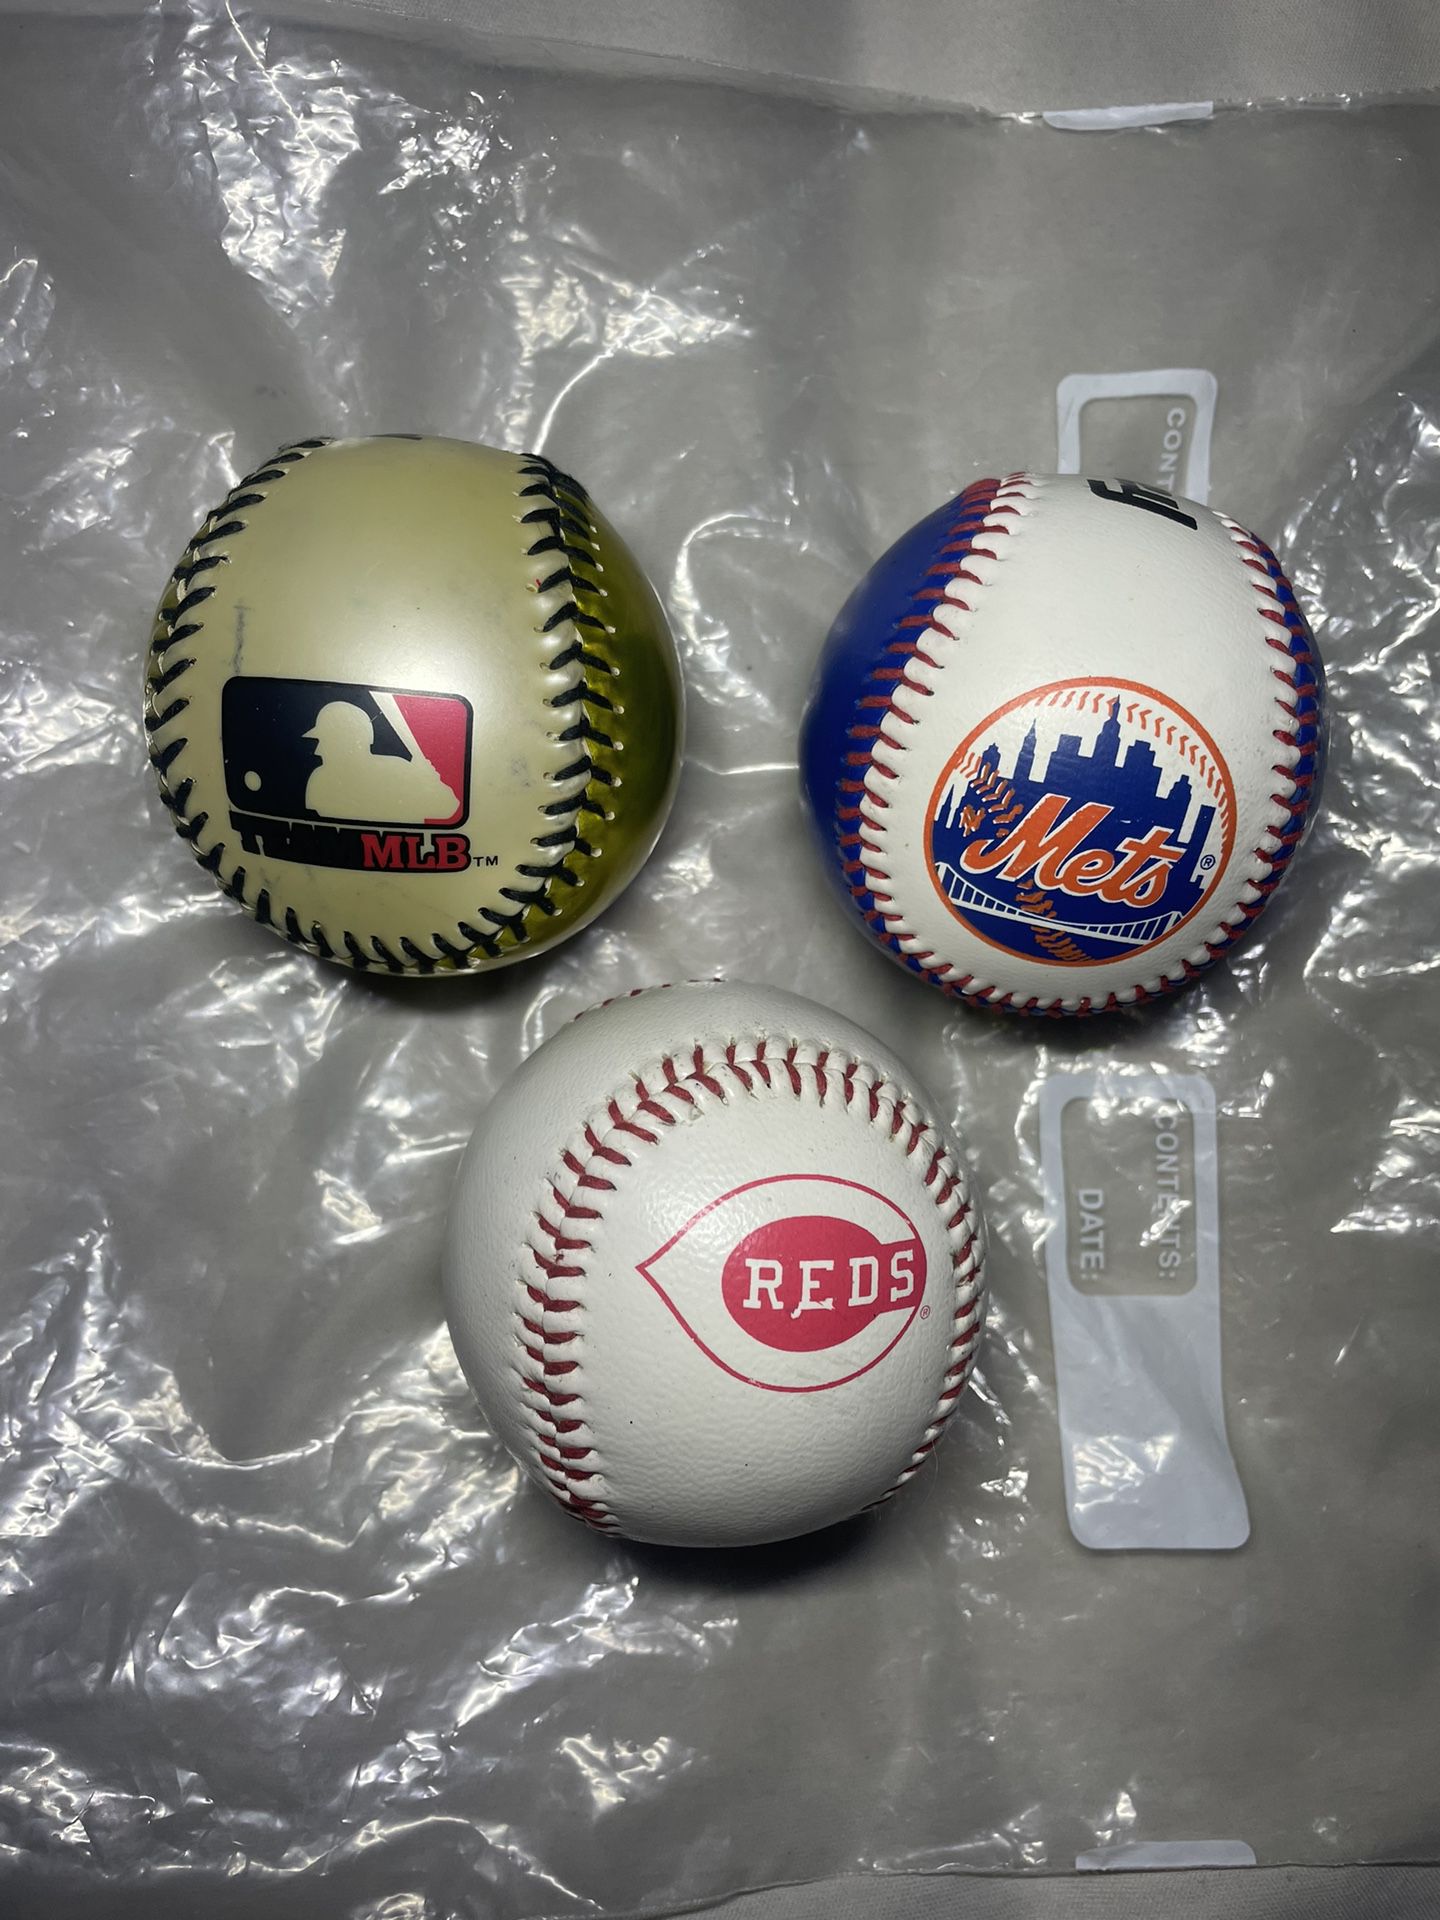 Pack of 3 baseballs